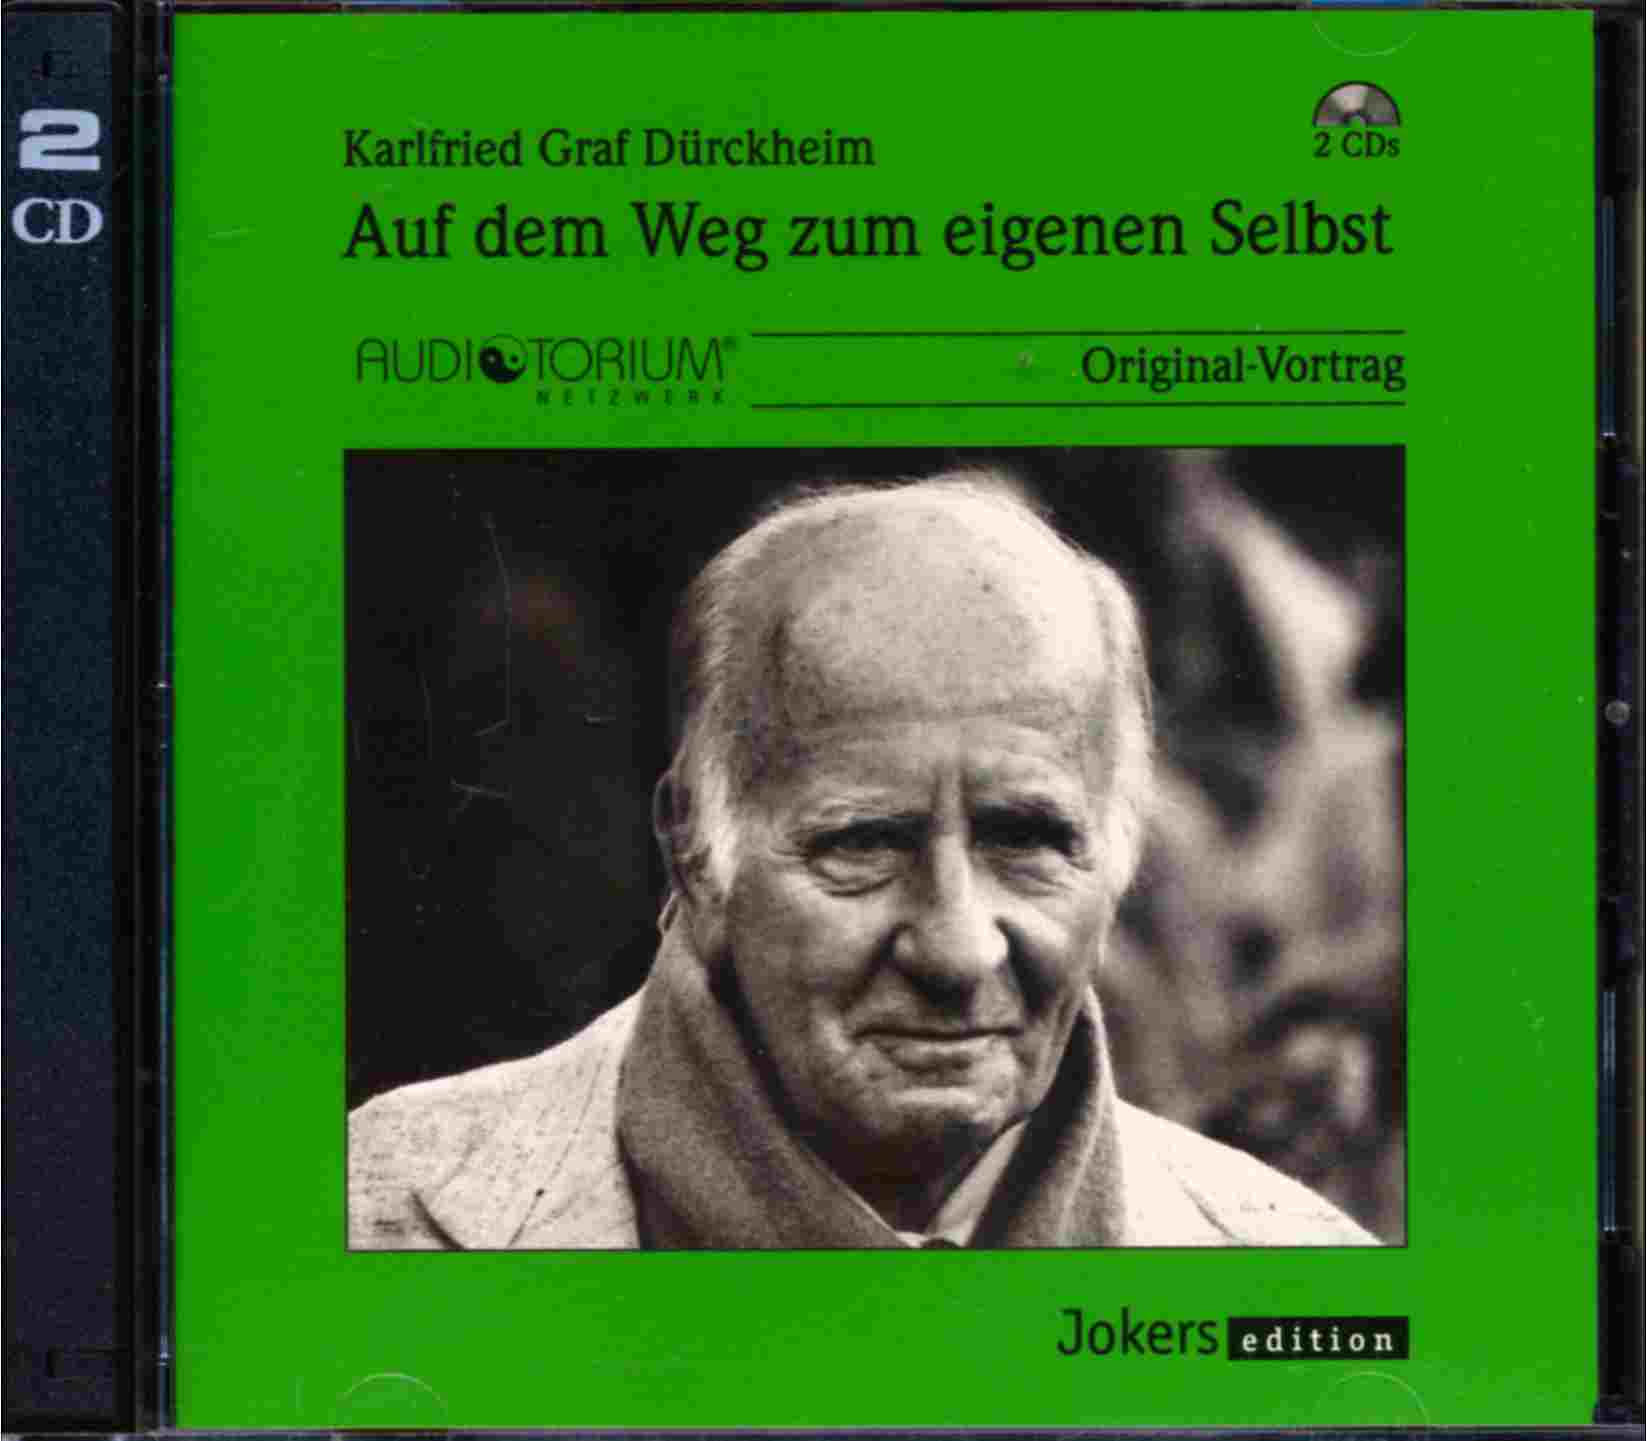 DÜRCKHEIM, Karlfried Graf v.  Auf dem Weg zum eigenen Selbst (Audio-Doppel-CD). Original-Vortrag. 